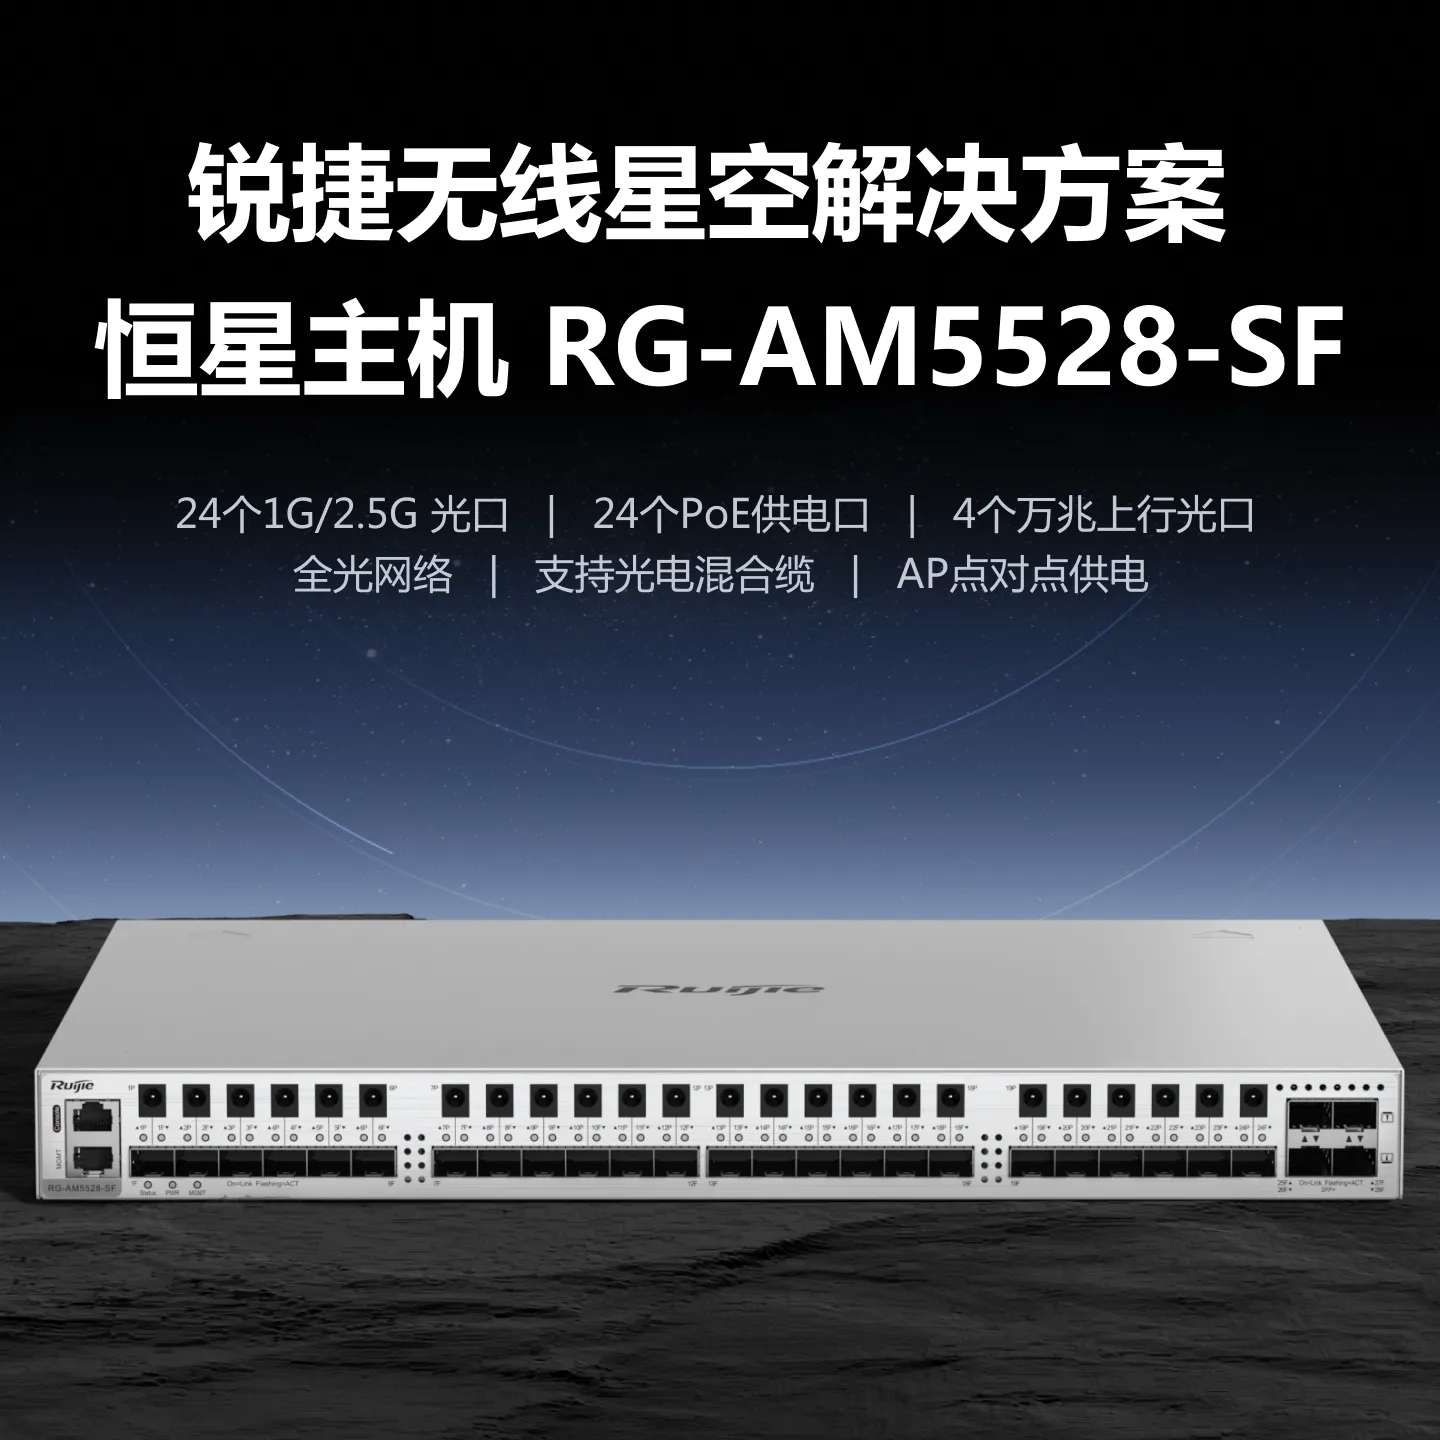 RG-AM5528-SF